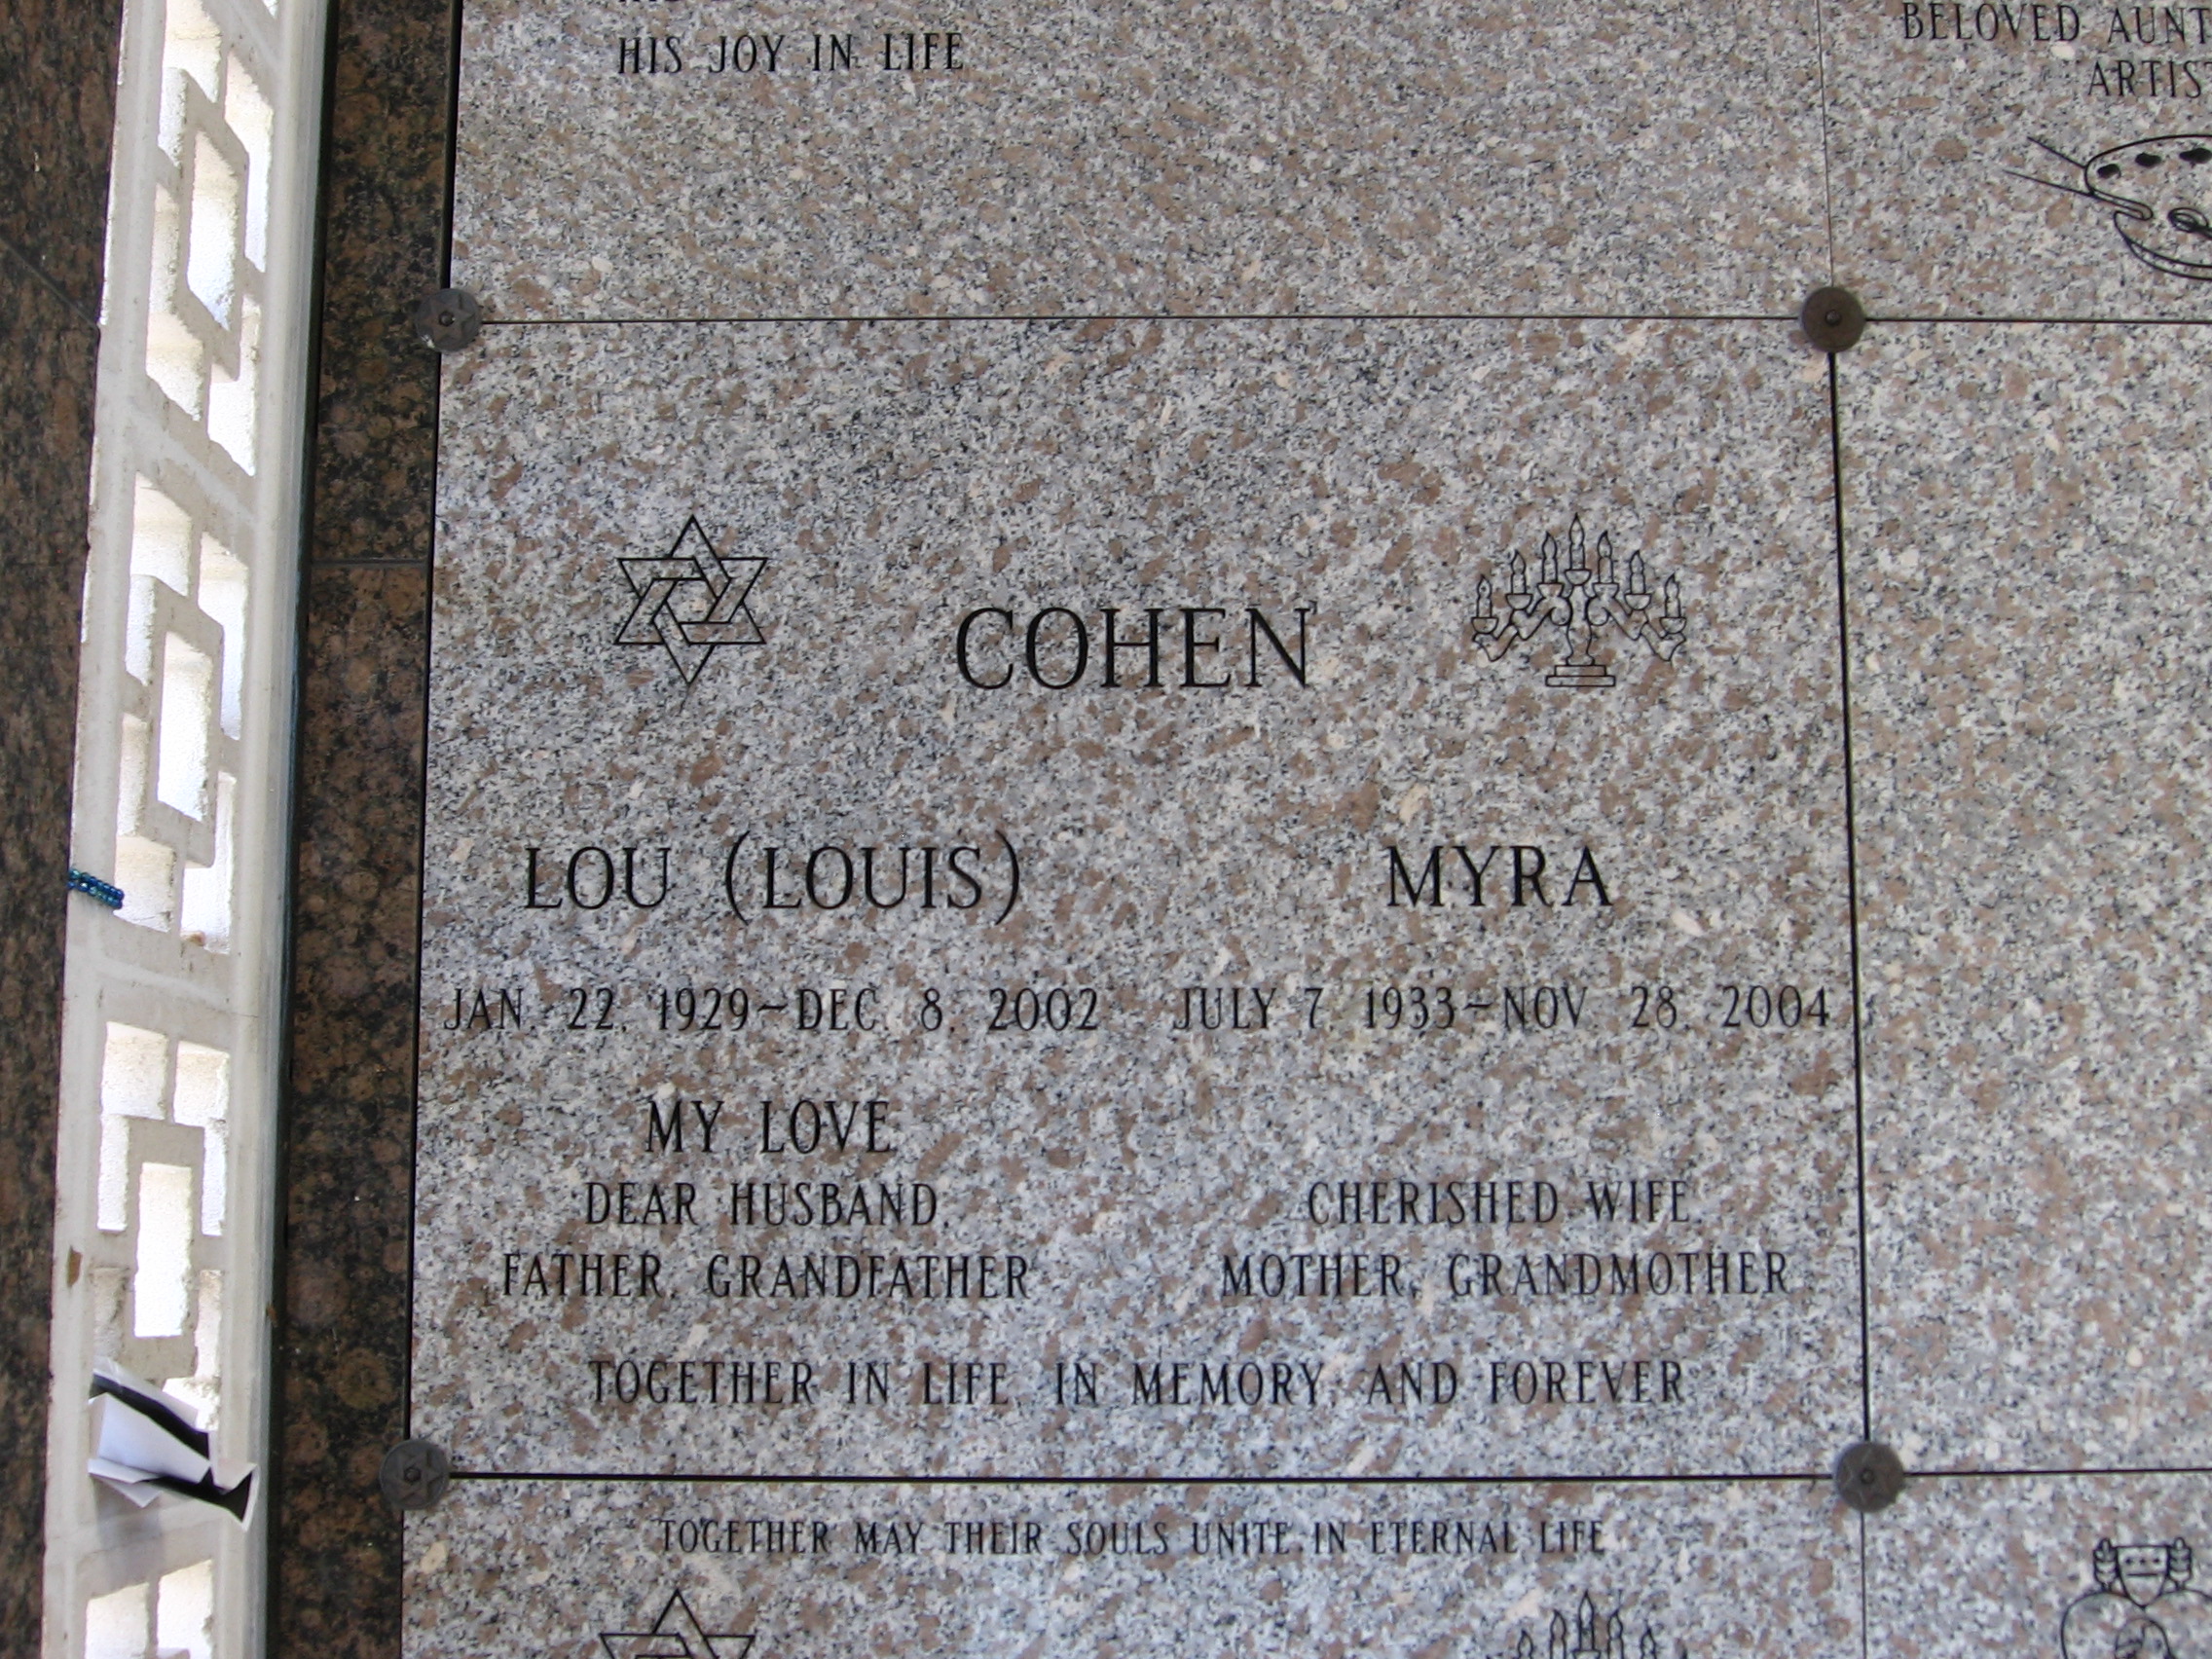 Louis "Lou" Cohen